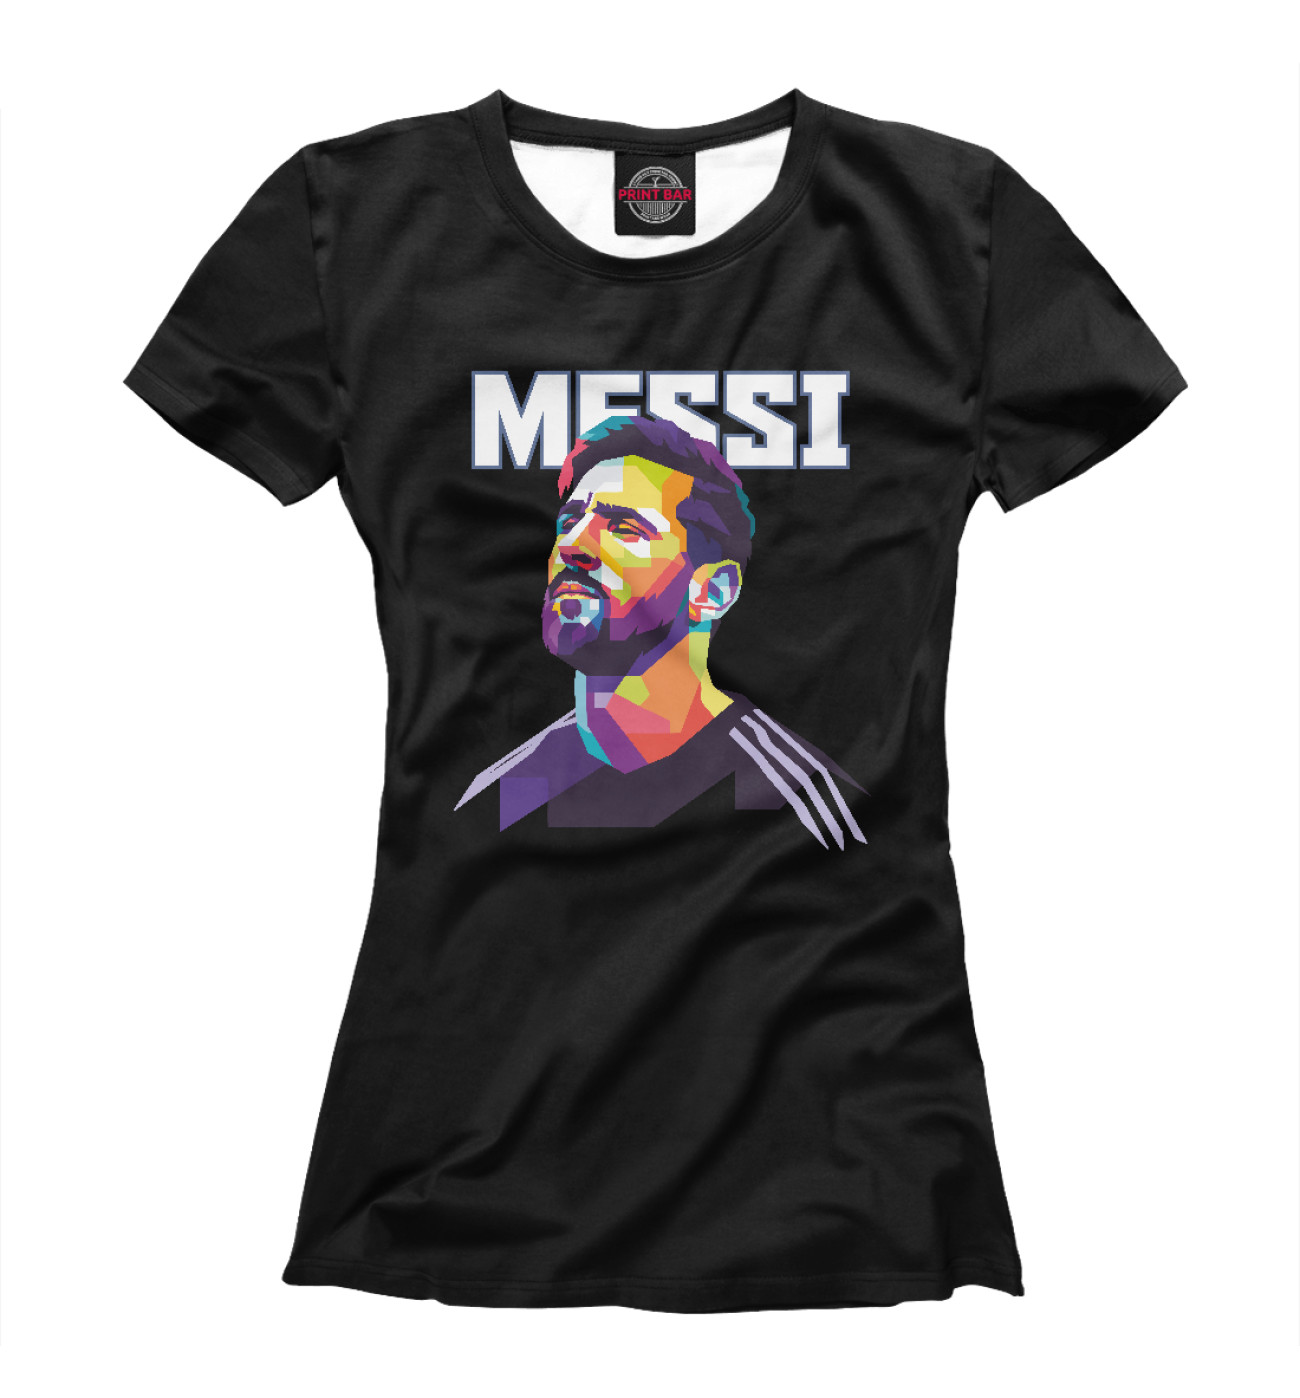 Женская Футболка Messi, артикул: BAR-846095-fut-1